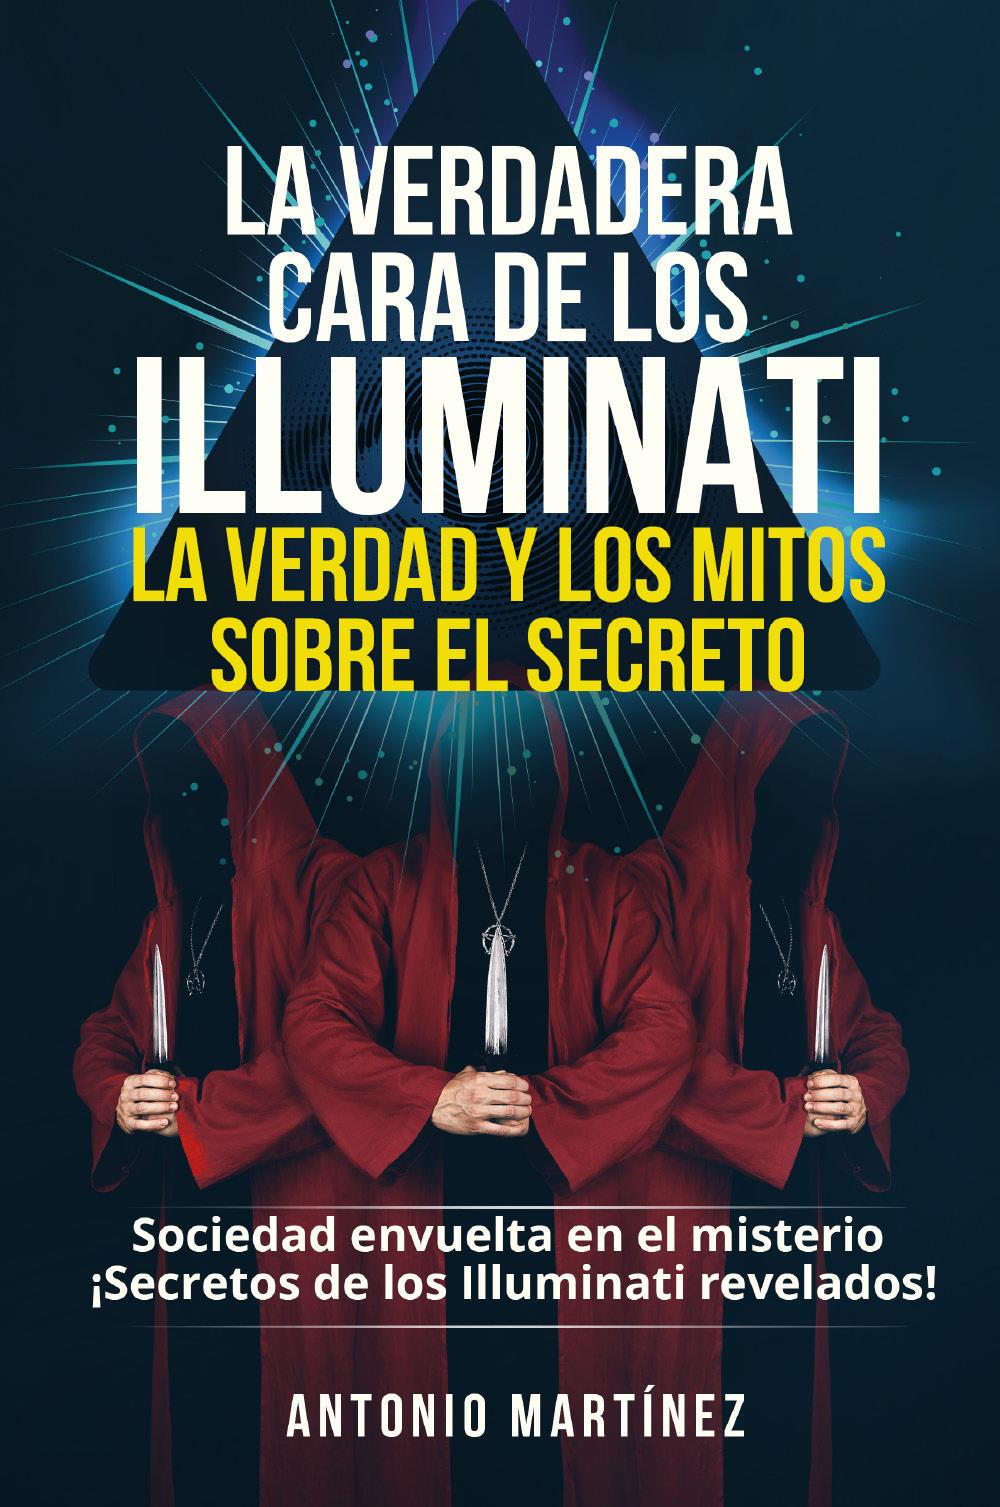 La verdadera cara de los illuminati: la verdad y los mitos sobre el secreto. Sociedad envuelta en el misterio - ¡Secretos de los Illuminati revelados!